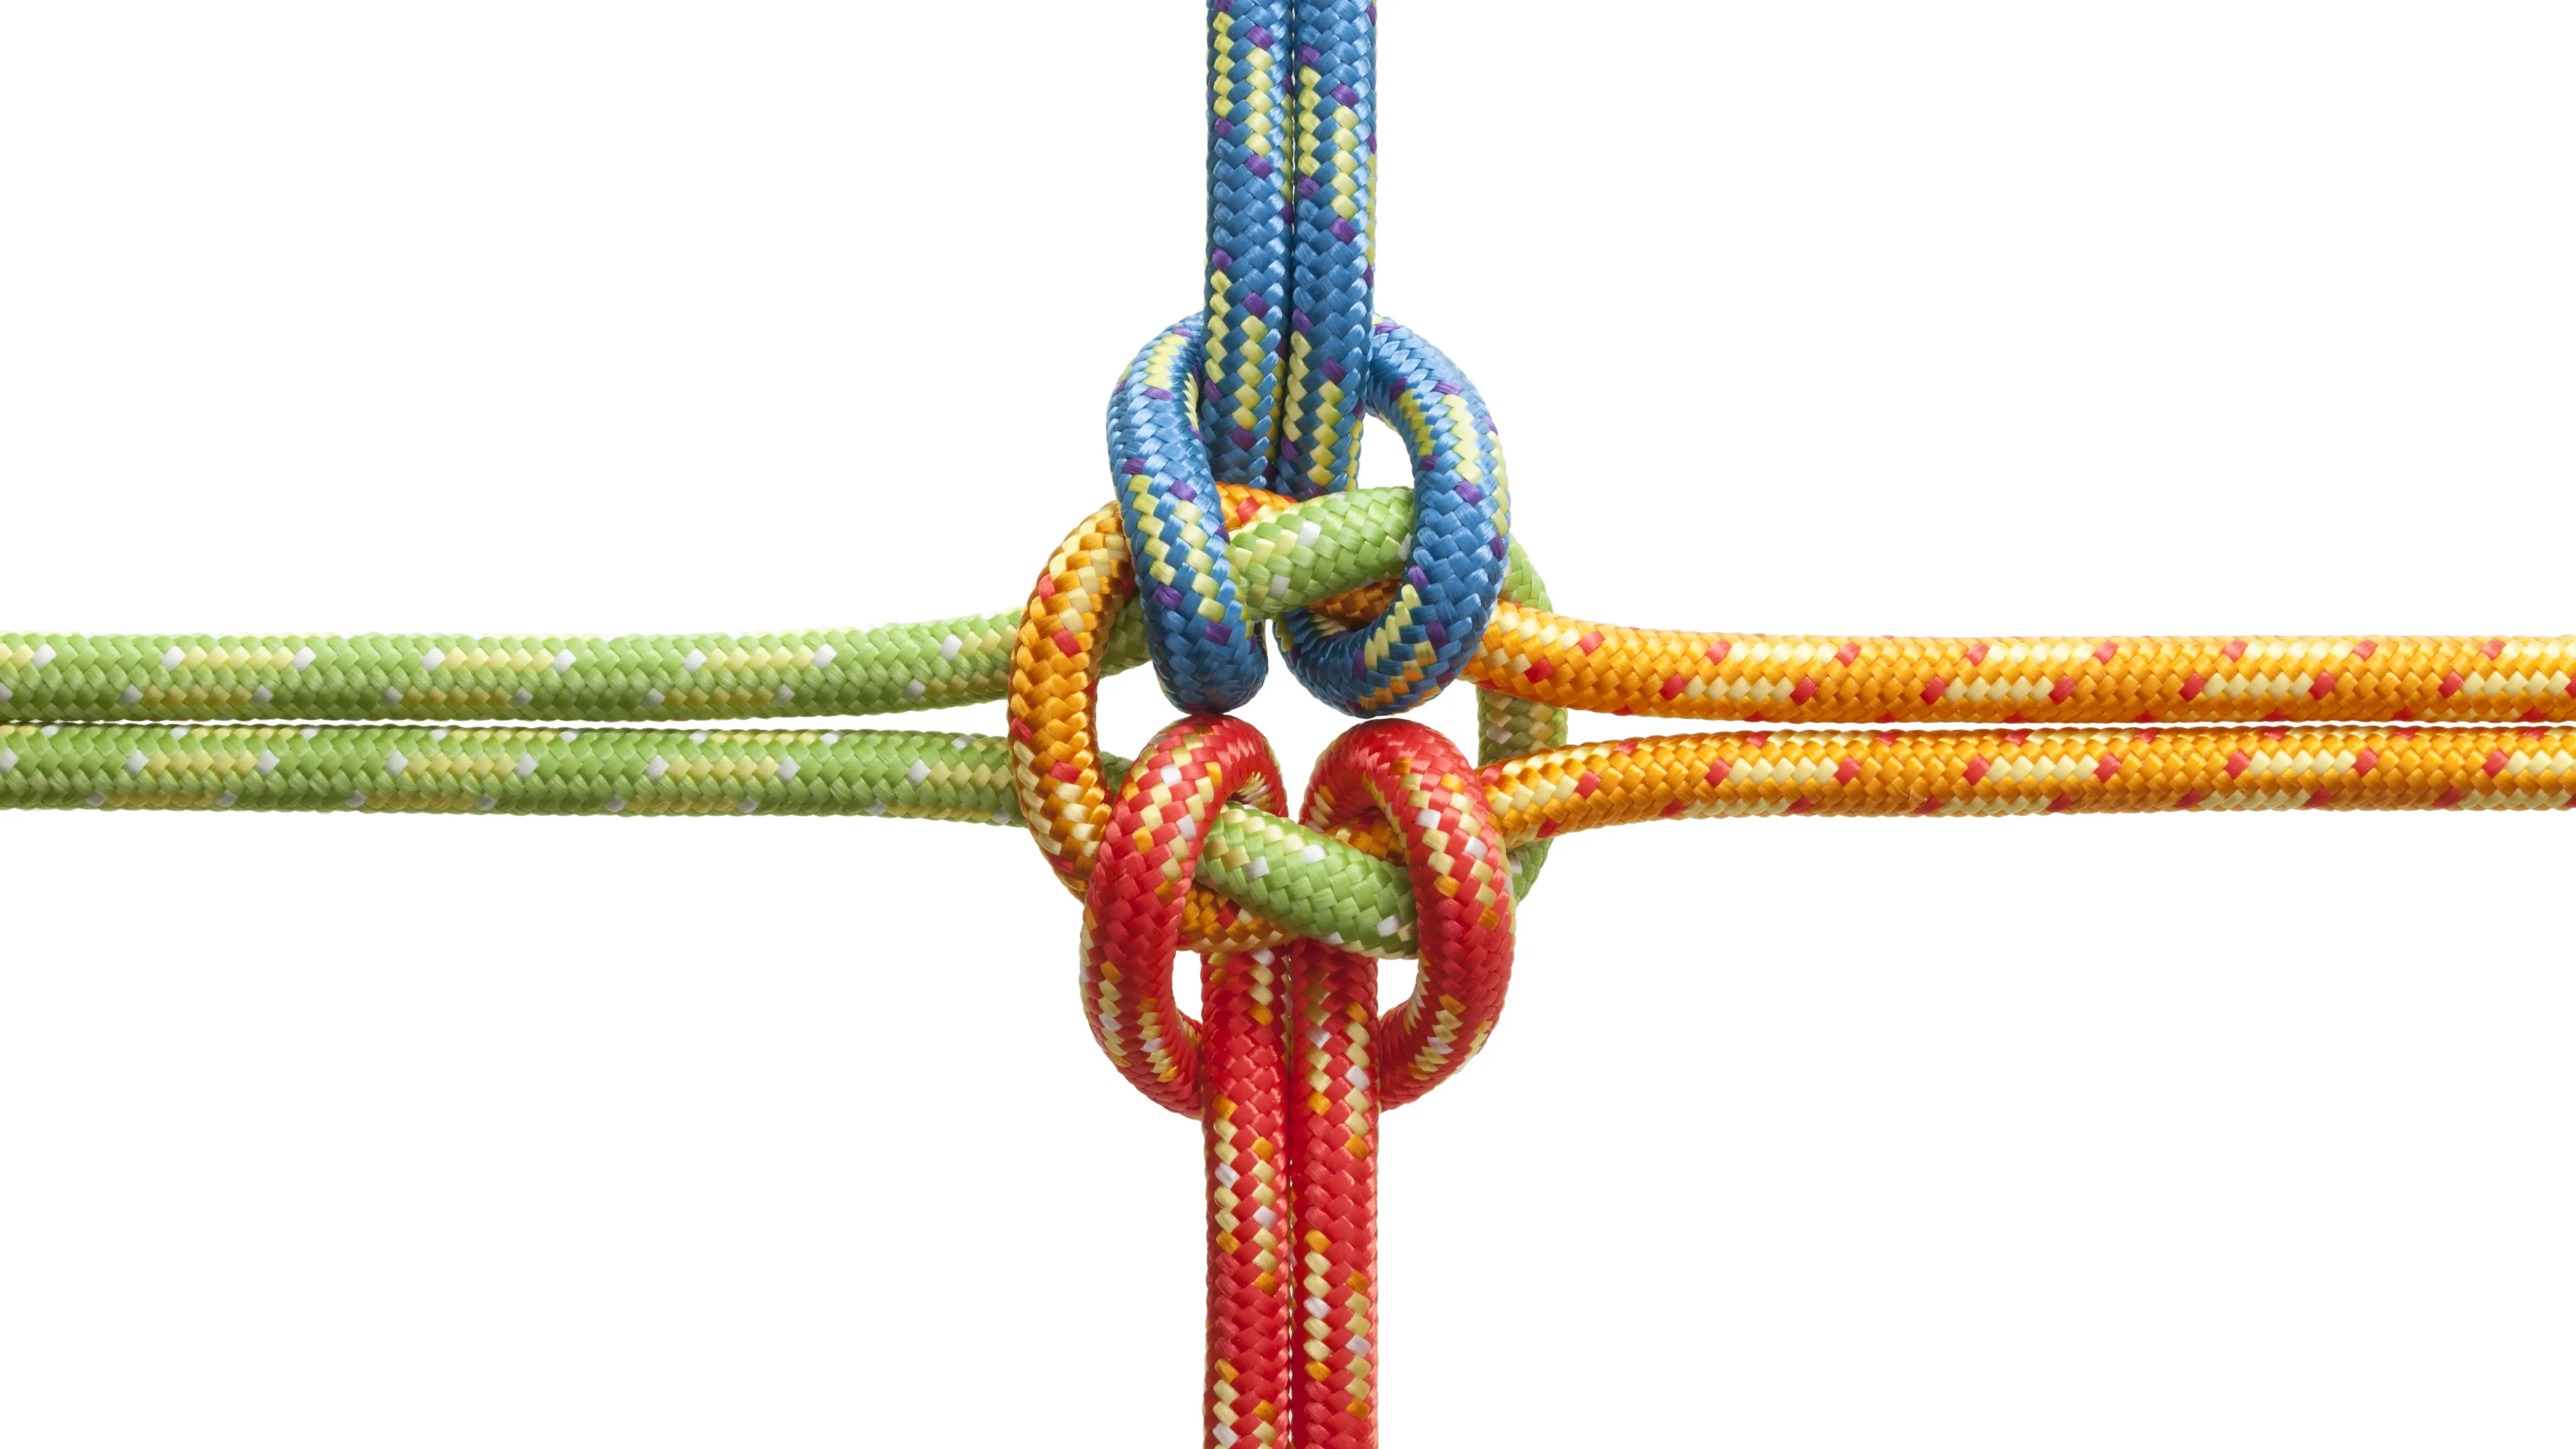 Das Symbolbild zeigt vier verschieden farbige Seile, die in der Mitte zu einem Knoten zusammenlaufen. 